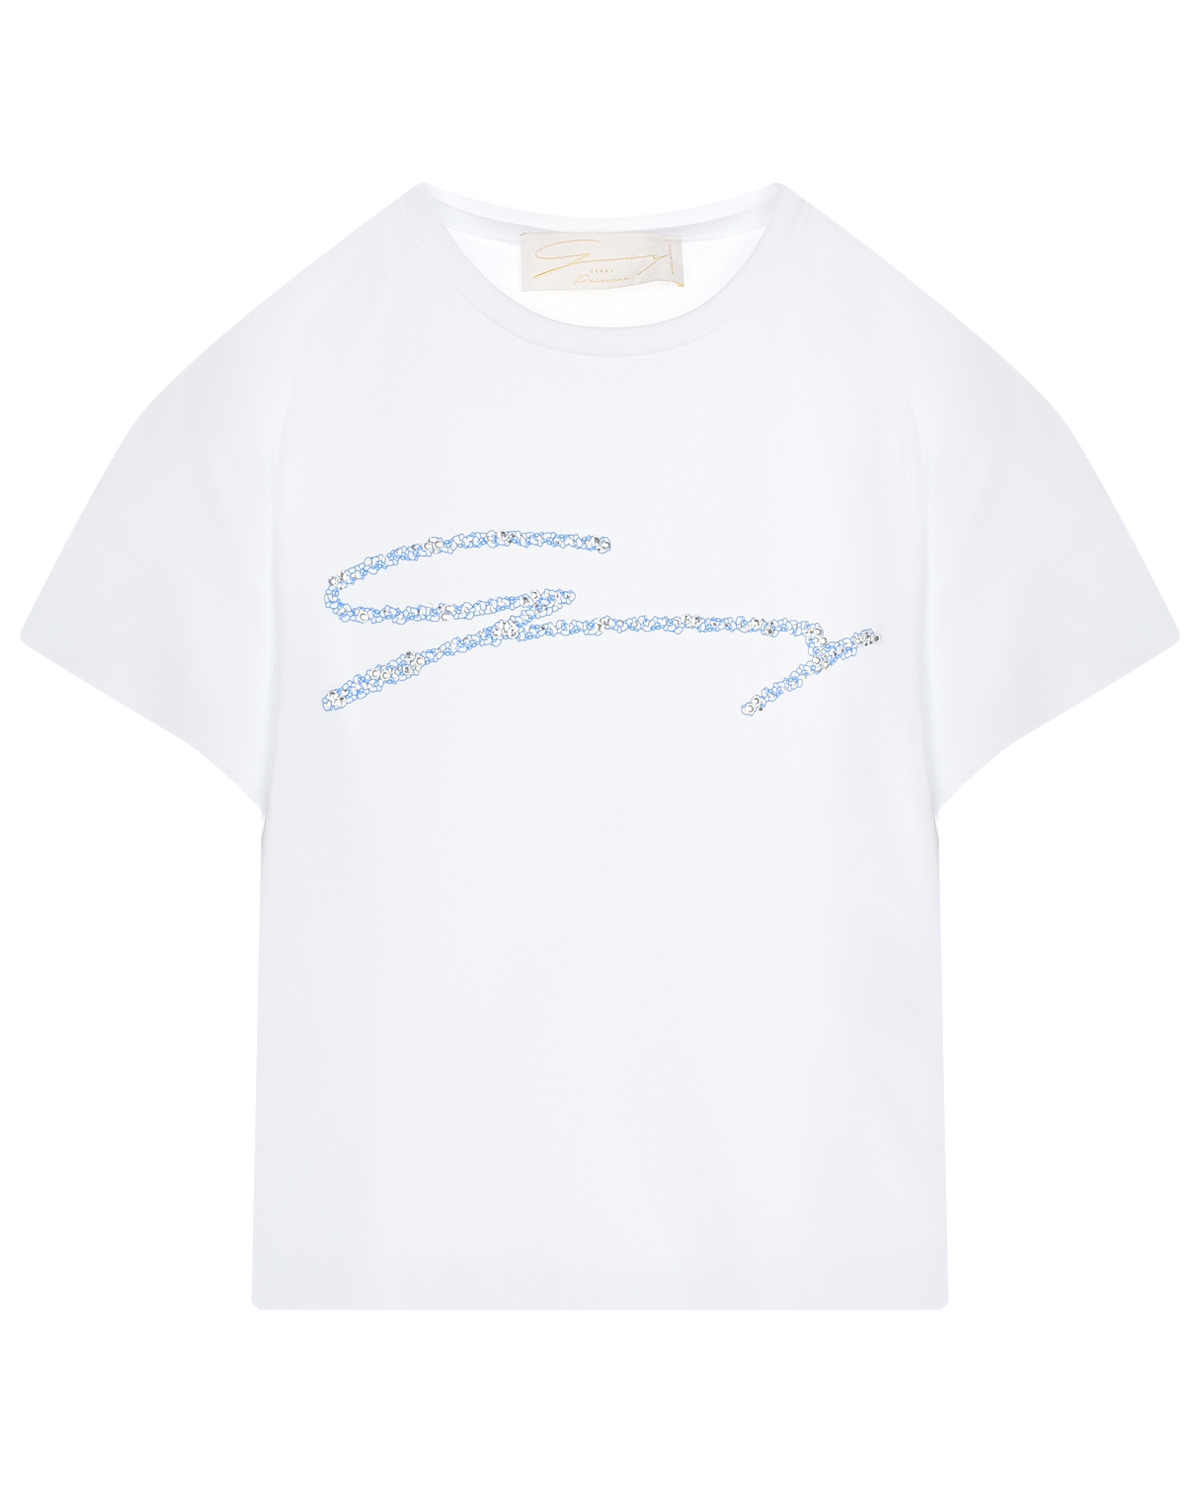 Белая футболка с голубым лого Genny, размер 128, цвет белый - фото 1